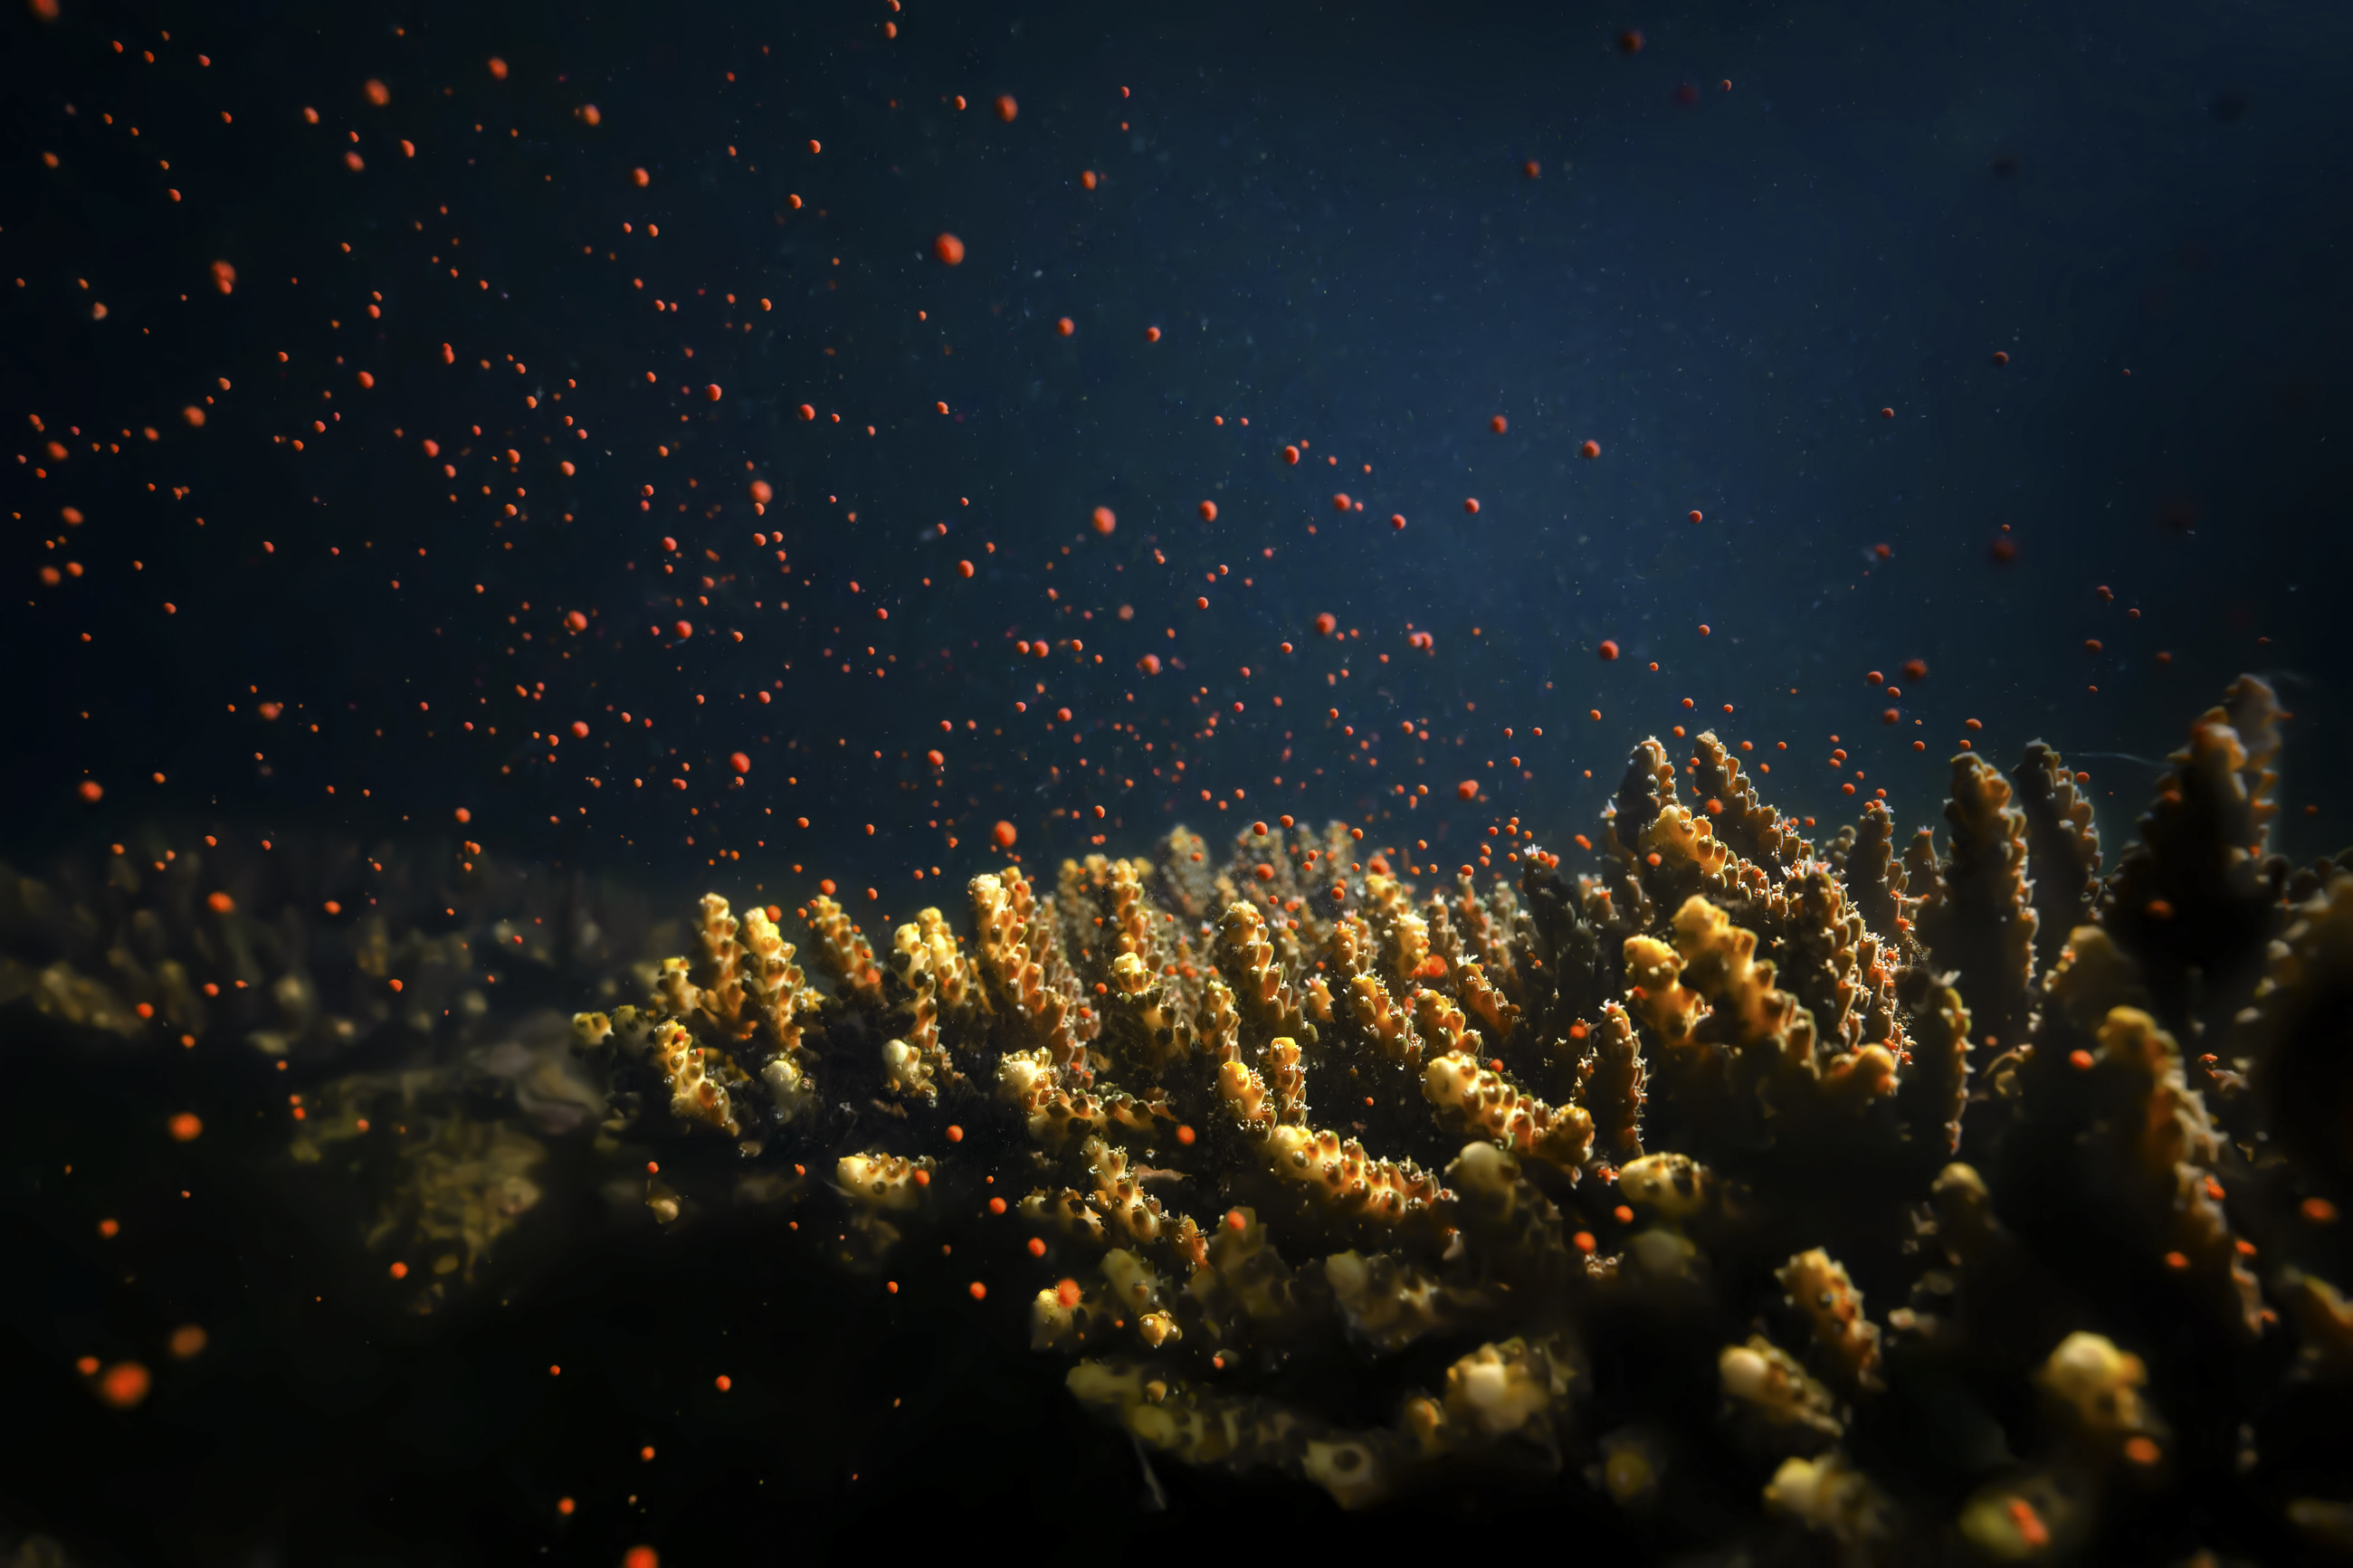 02-《珊瑚产卵奇观》-2023年摄于大鹏半岛海域.jpg